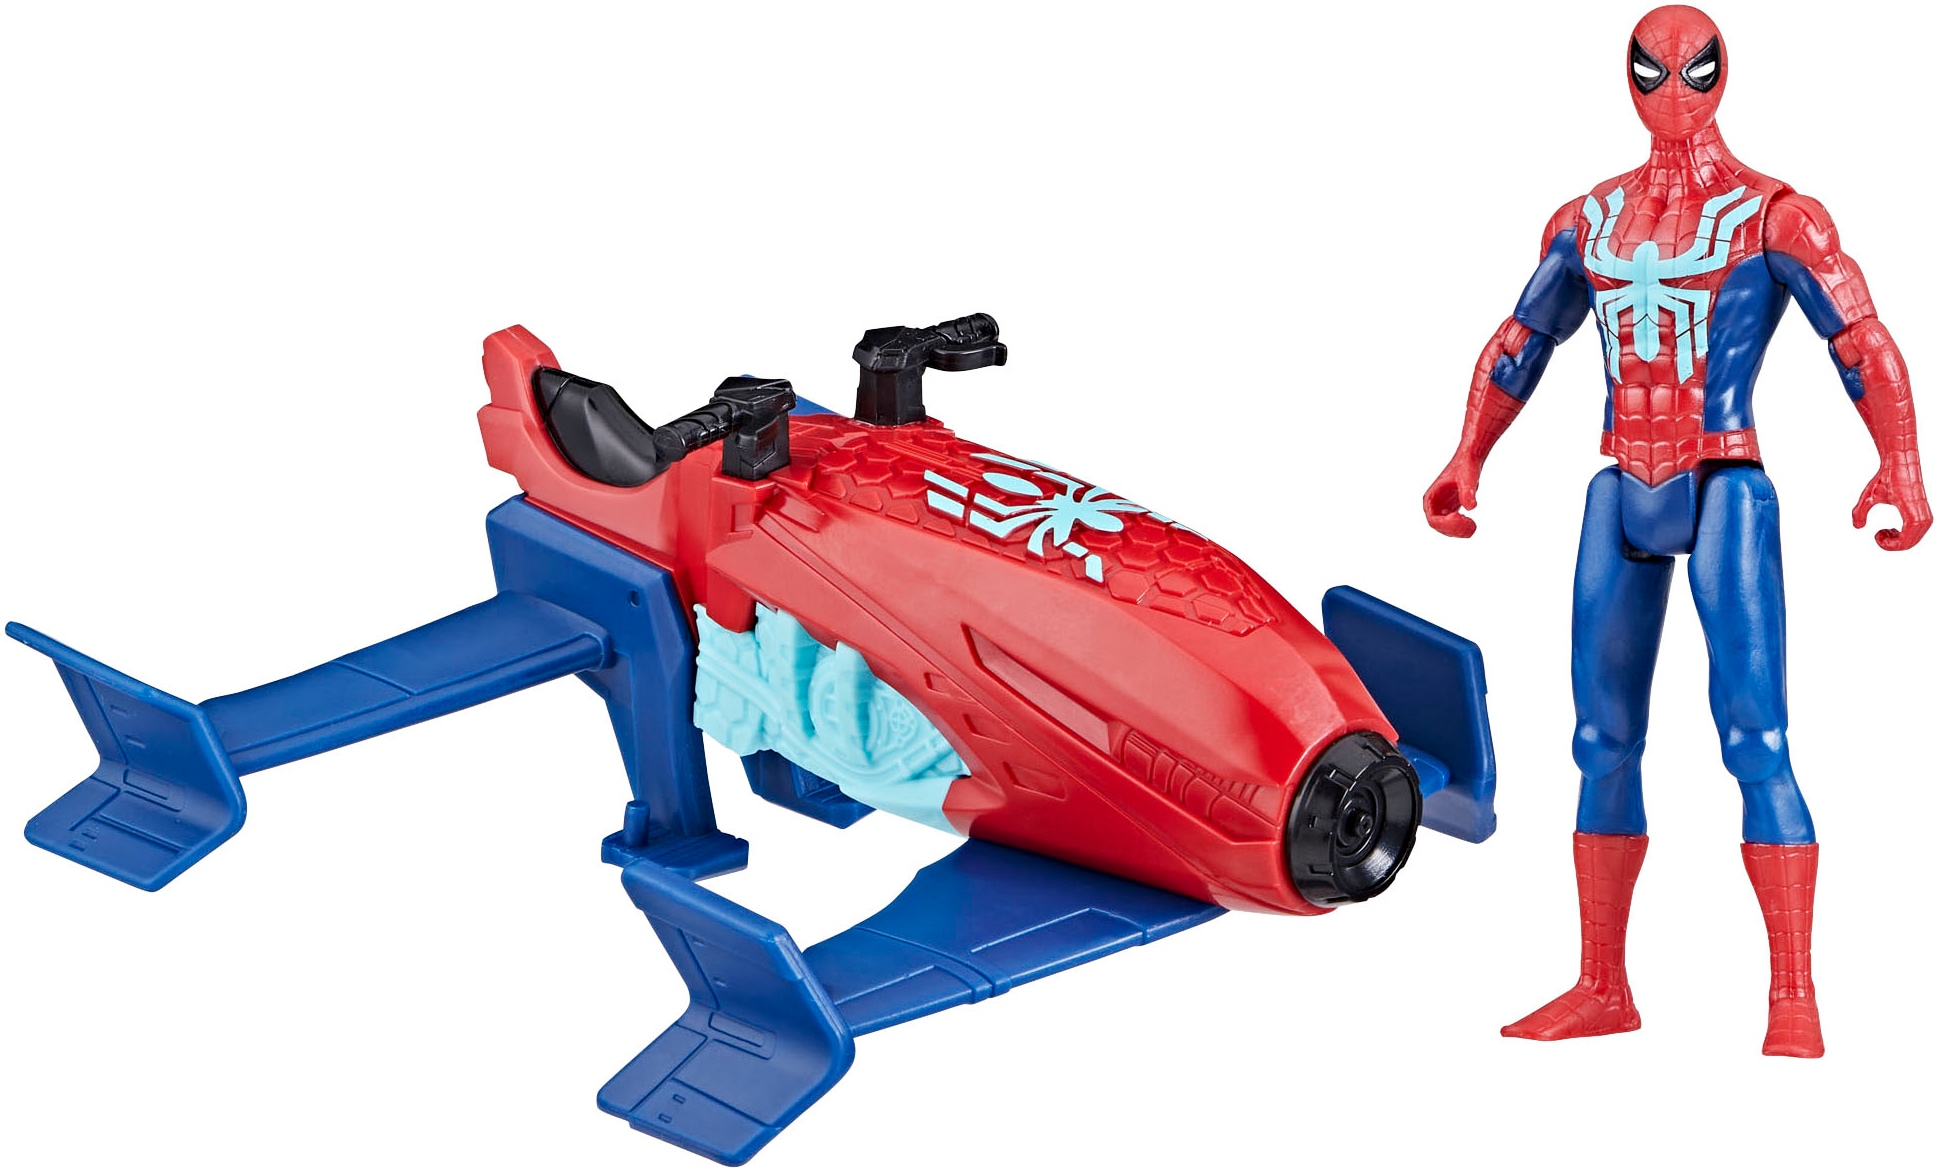 Hasbro Actionfigur »Marvel Spider-Man, Spider-Man Jet Splasher«, Spritzt Wasser